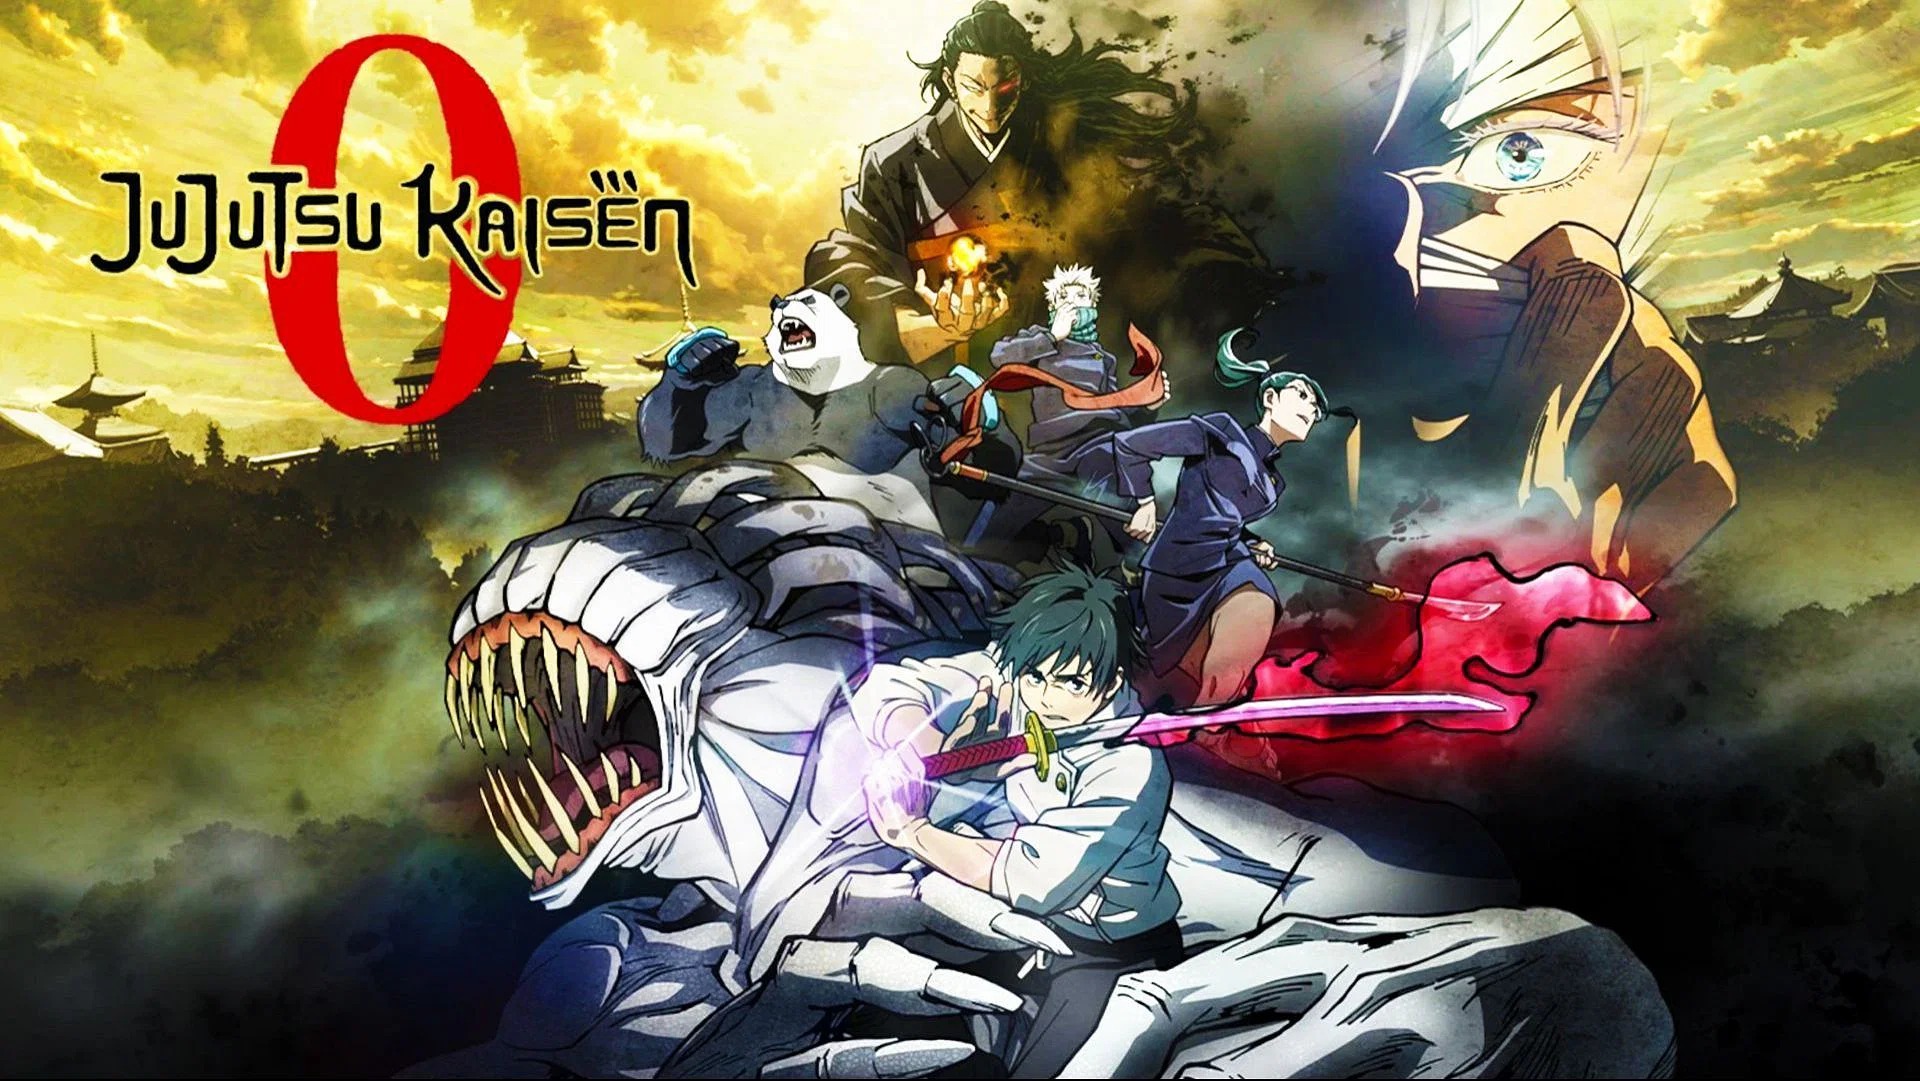 Afinal, o filme Jujutsu Kaisen 0 é canônico?